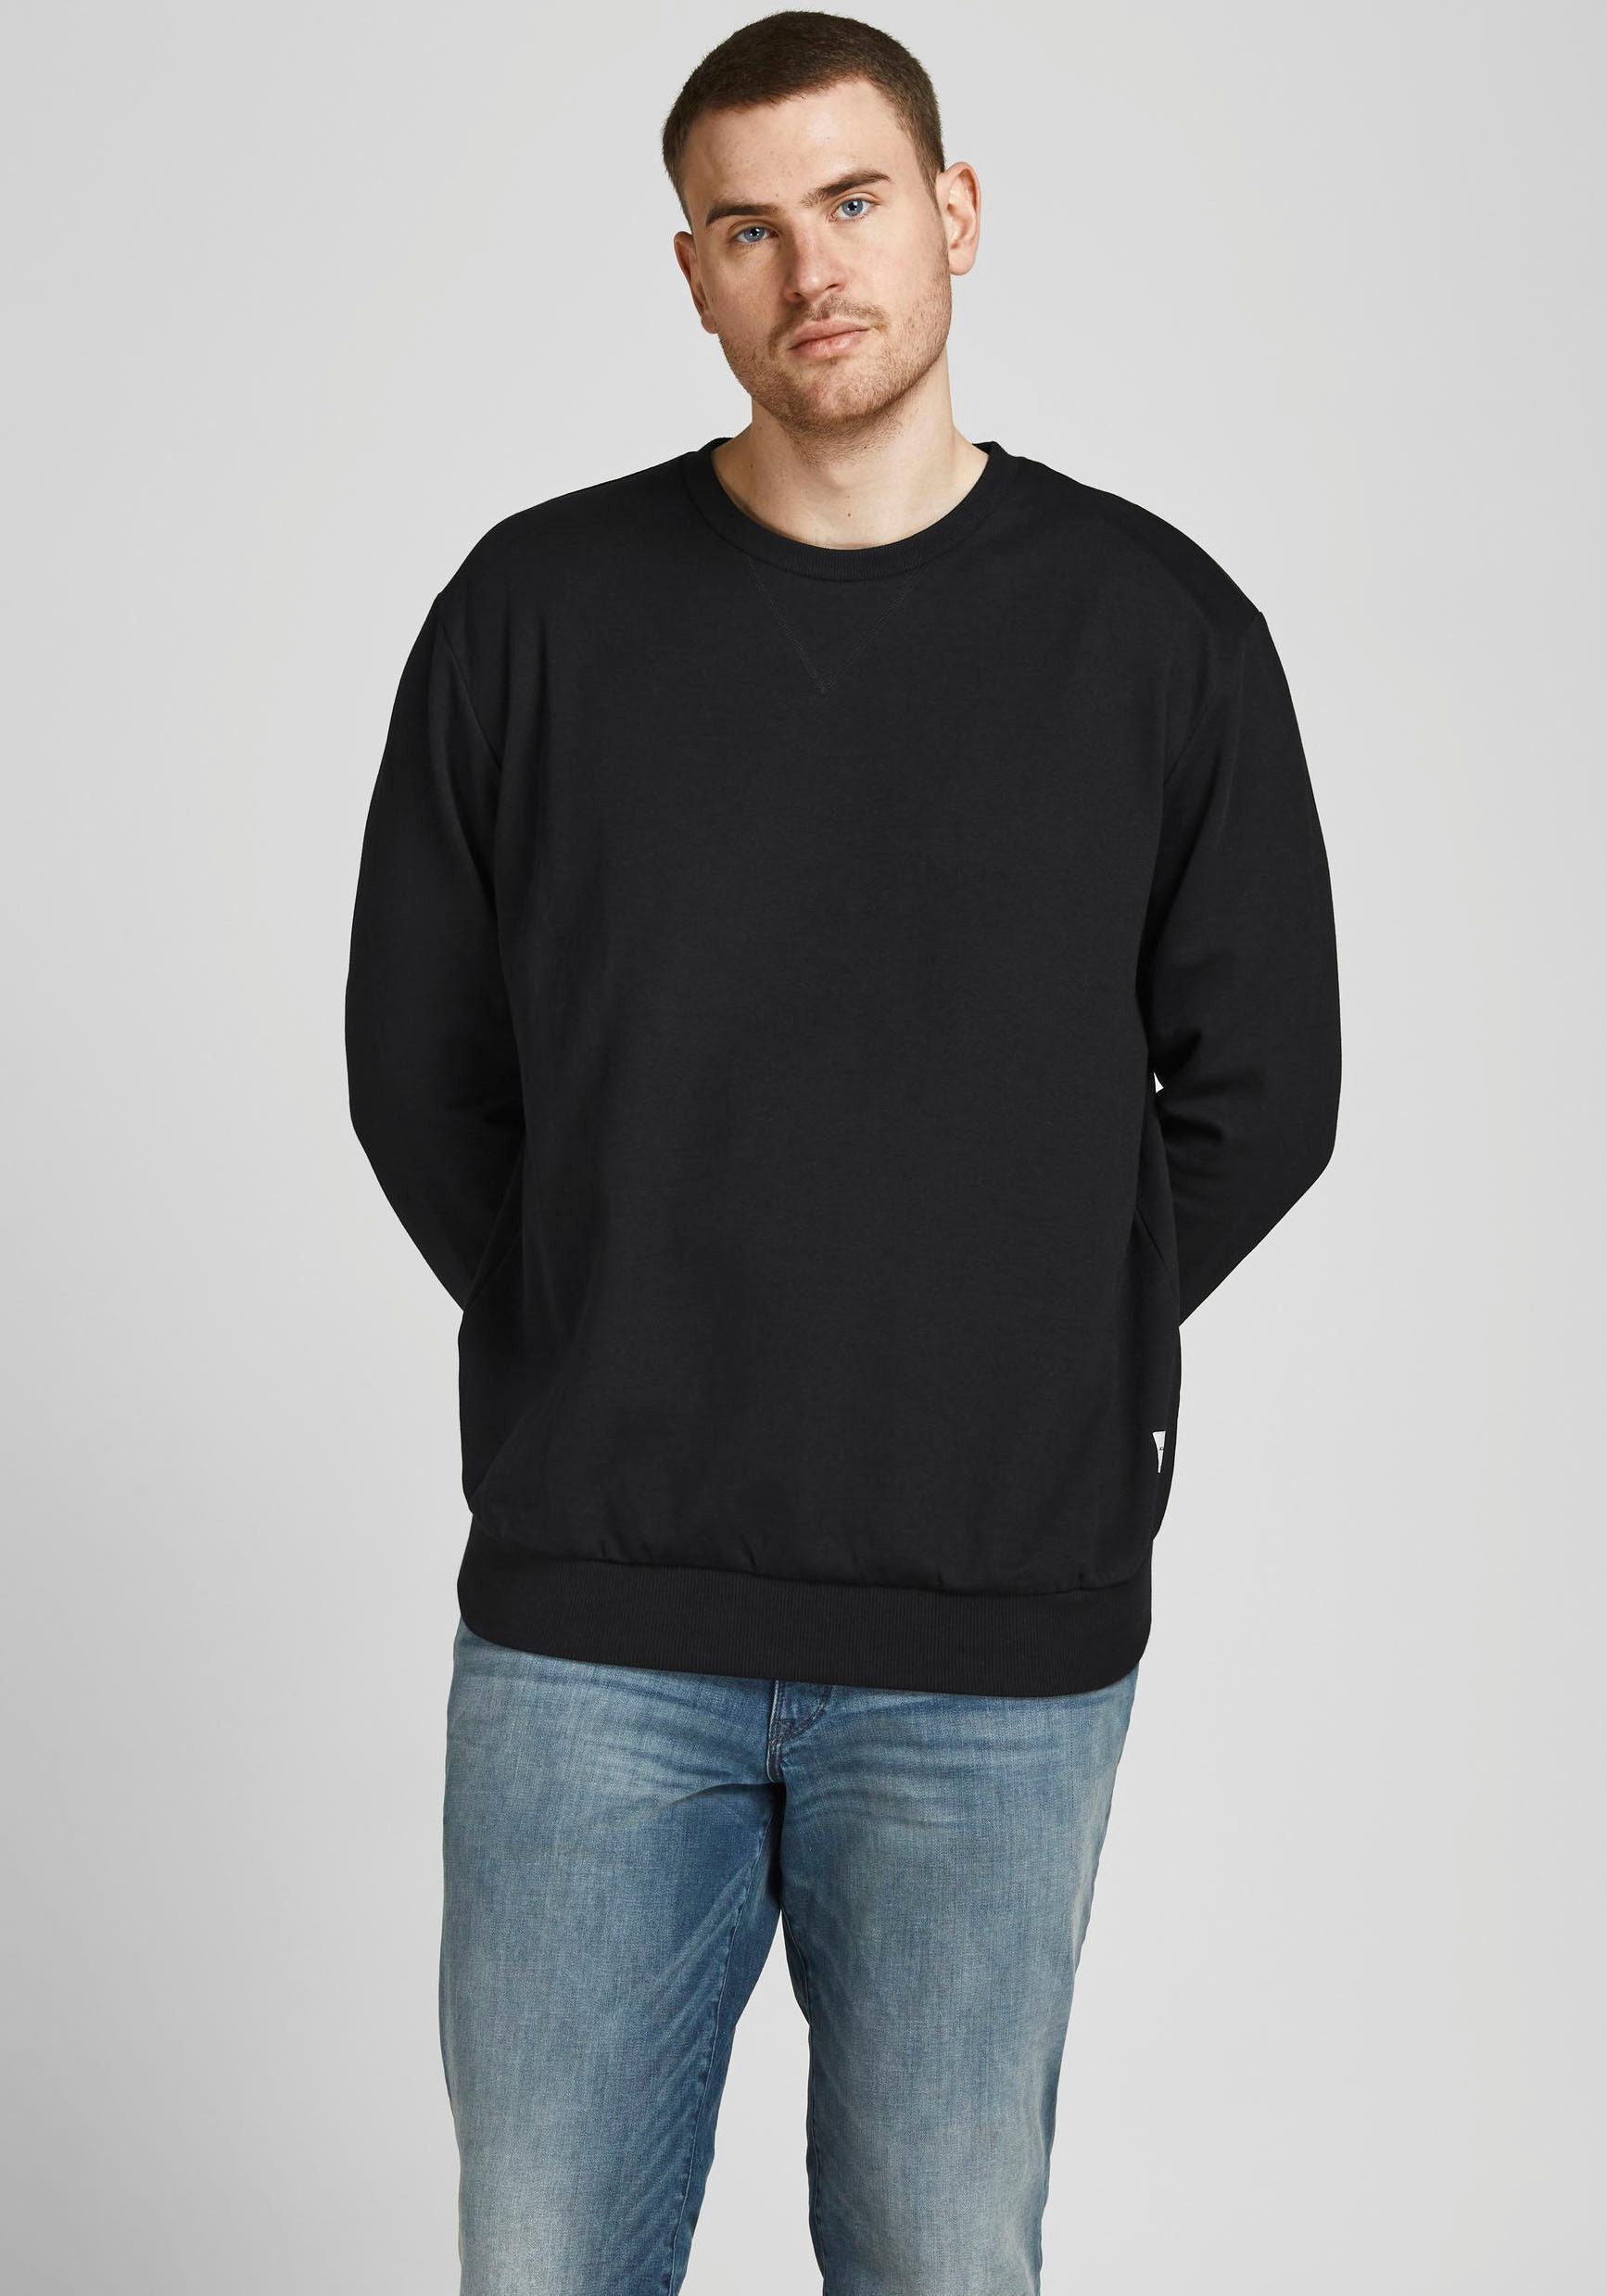 & Jack PlusSize (Packung) BASIC Jones Sweatshirt NECK schwarz CREW SWEAT